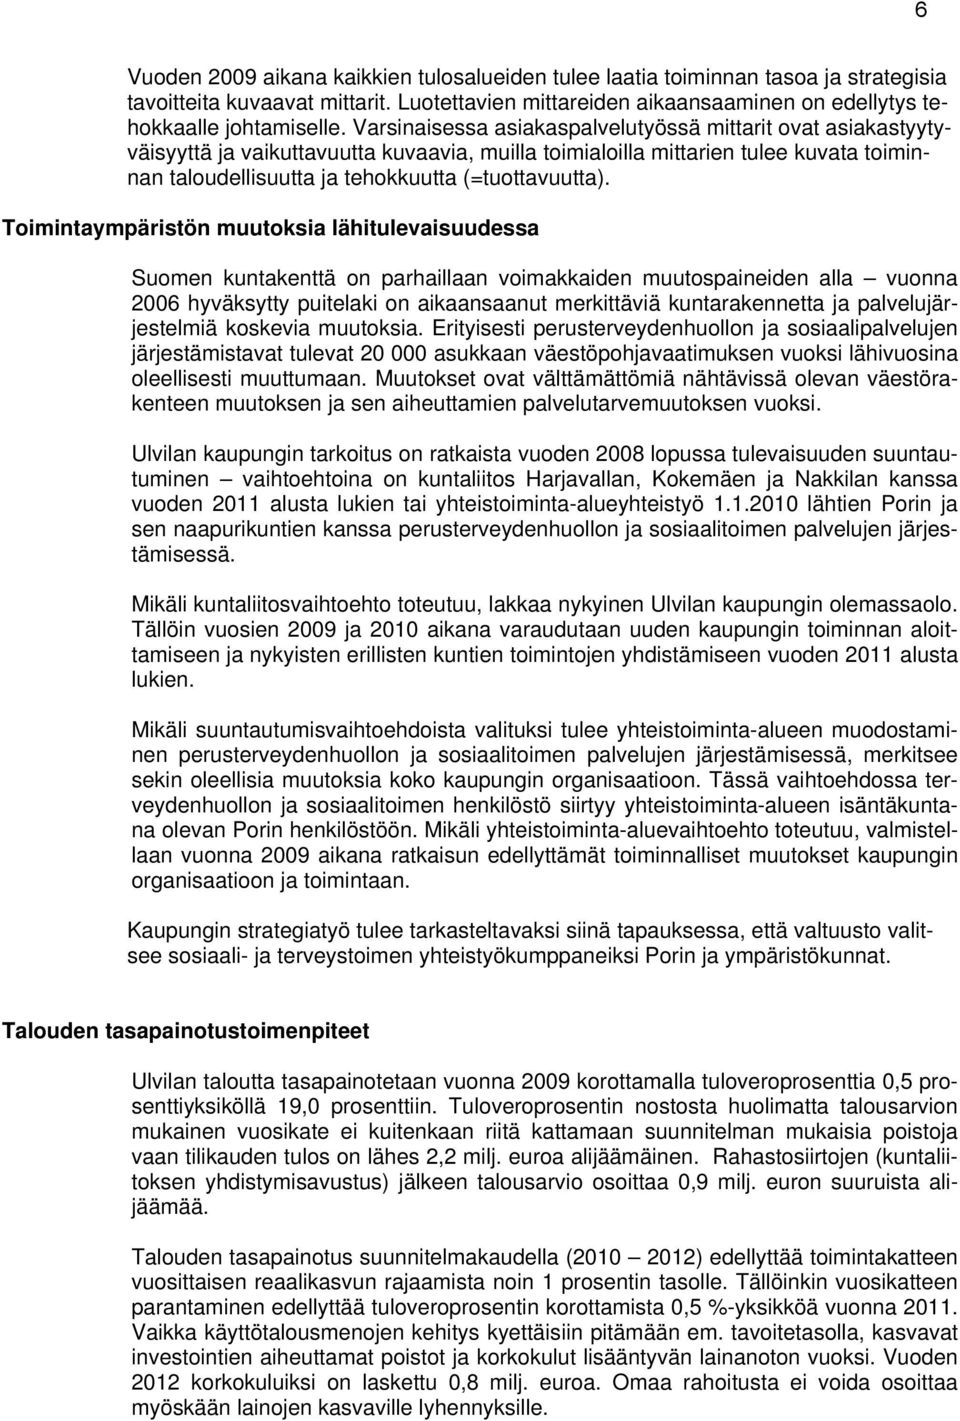 Toimintaympäristön muutoksia lähitulevaisuudessa Suomen kuntakenttä on parhaillaan voimakkaiden muutospaineiden alla vuonna 2006 hyväksytty puitelaki on aikaansaanut merkittäviä kuntarakennetta ja